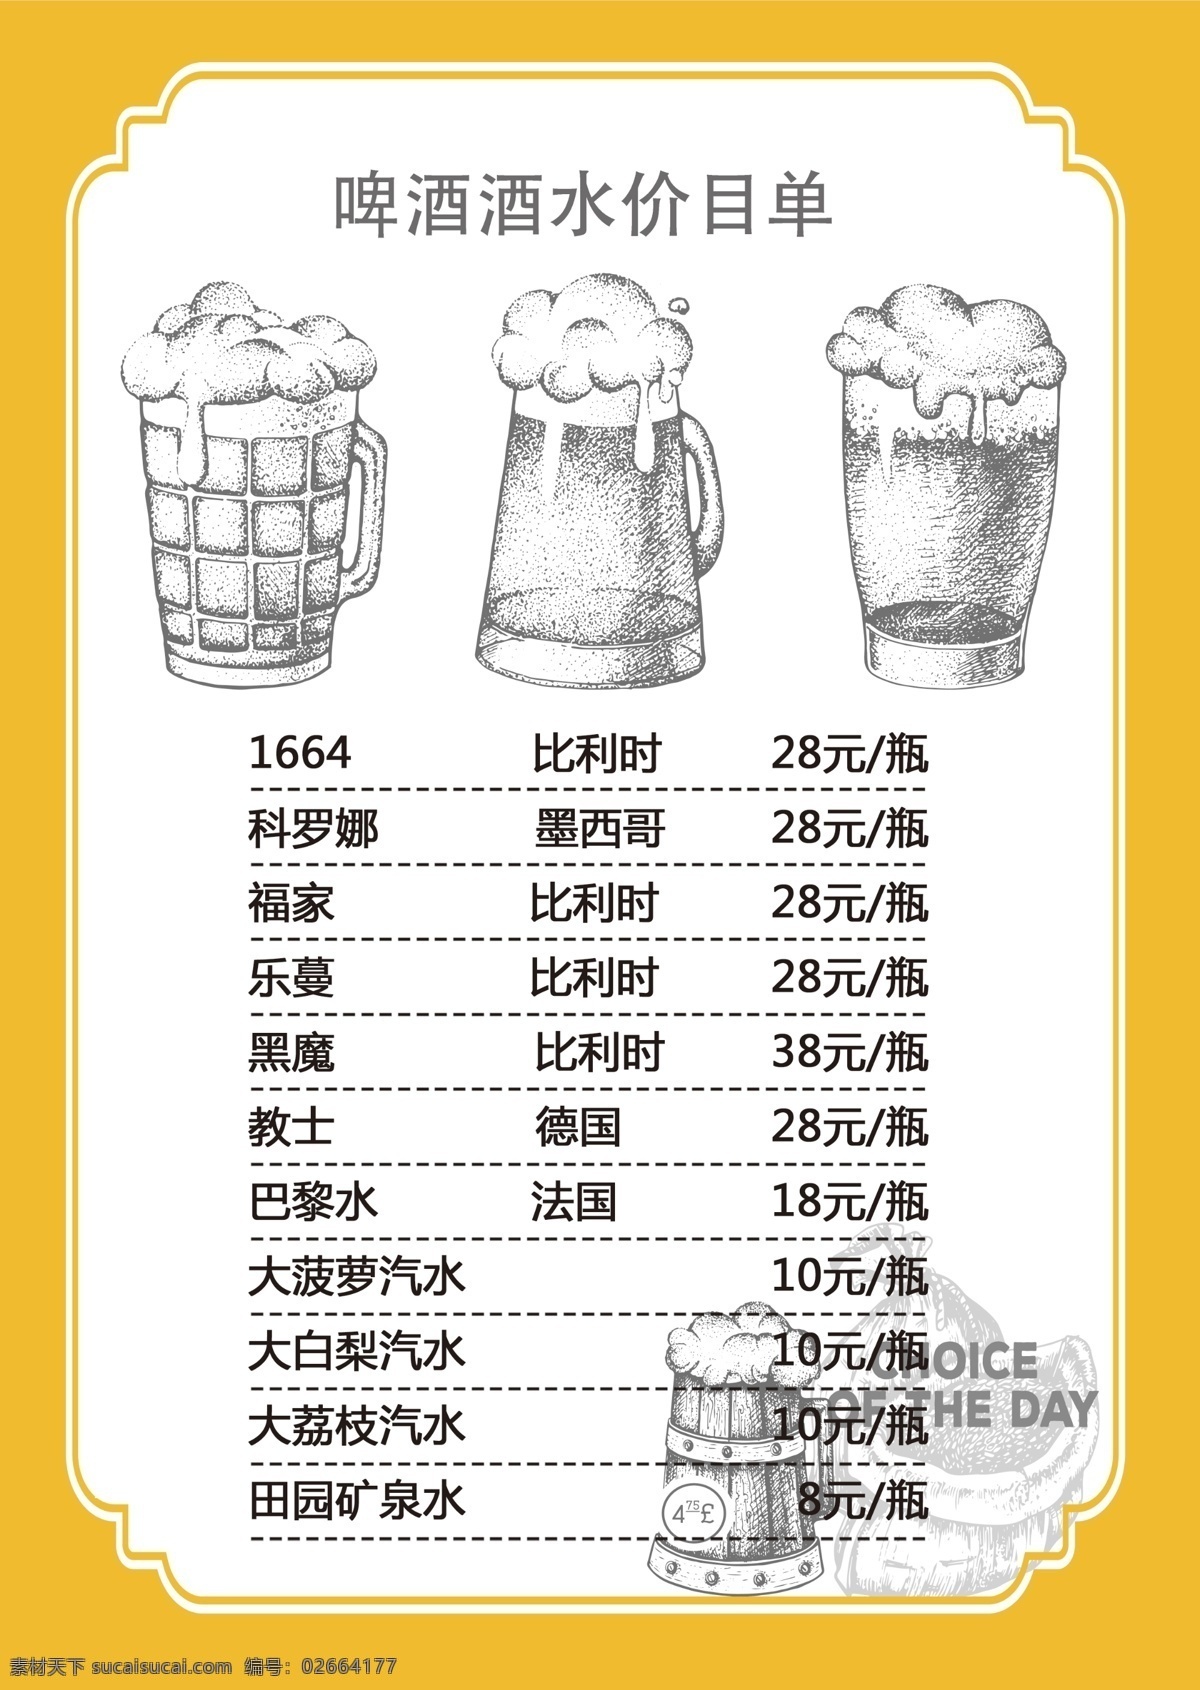 啤酒菜单 菜单 边框 水墨啤酒 啤酒 室外广告设计